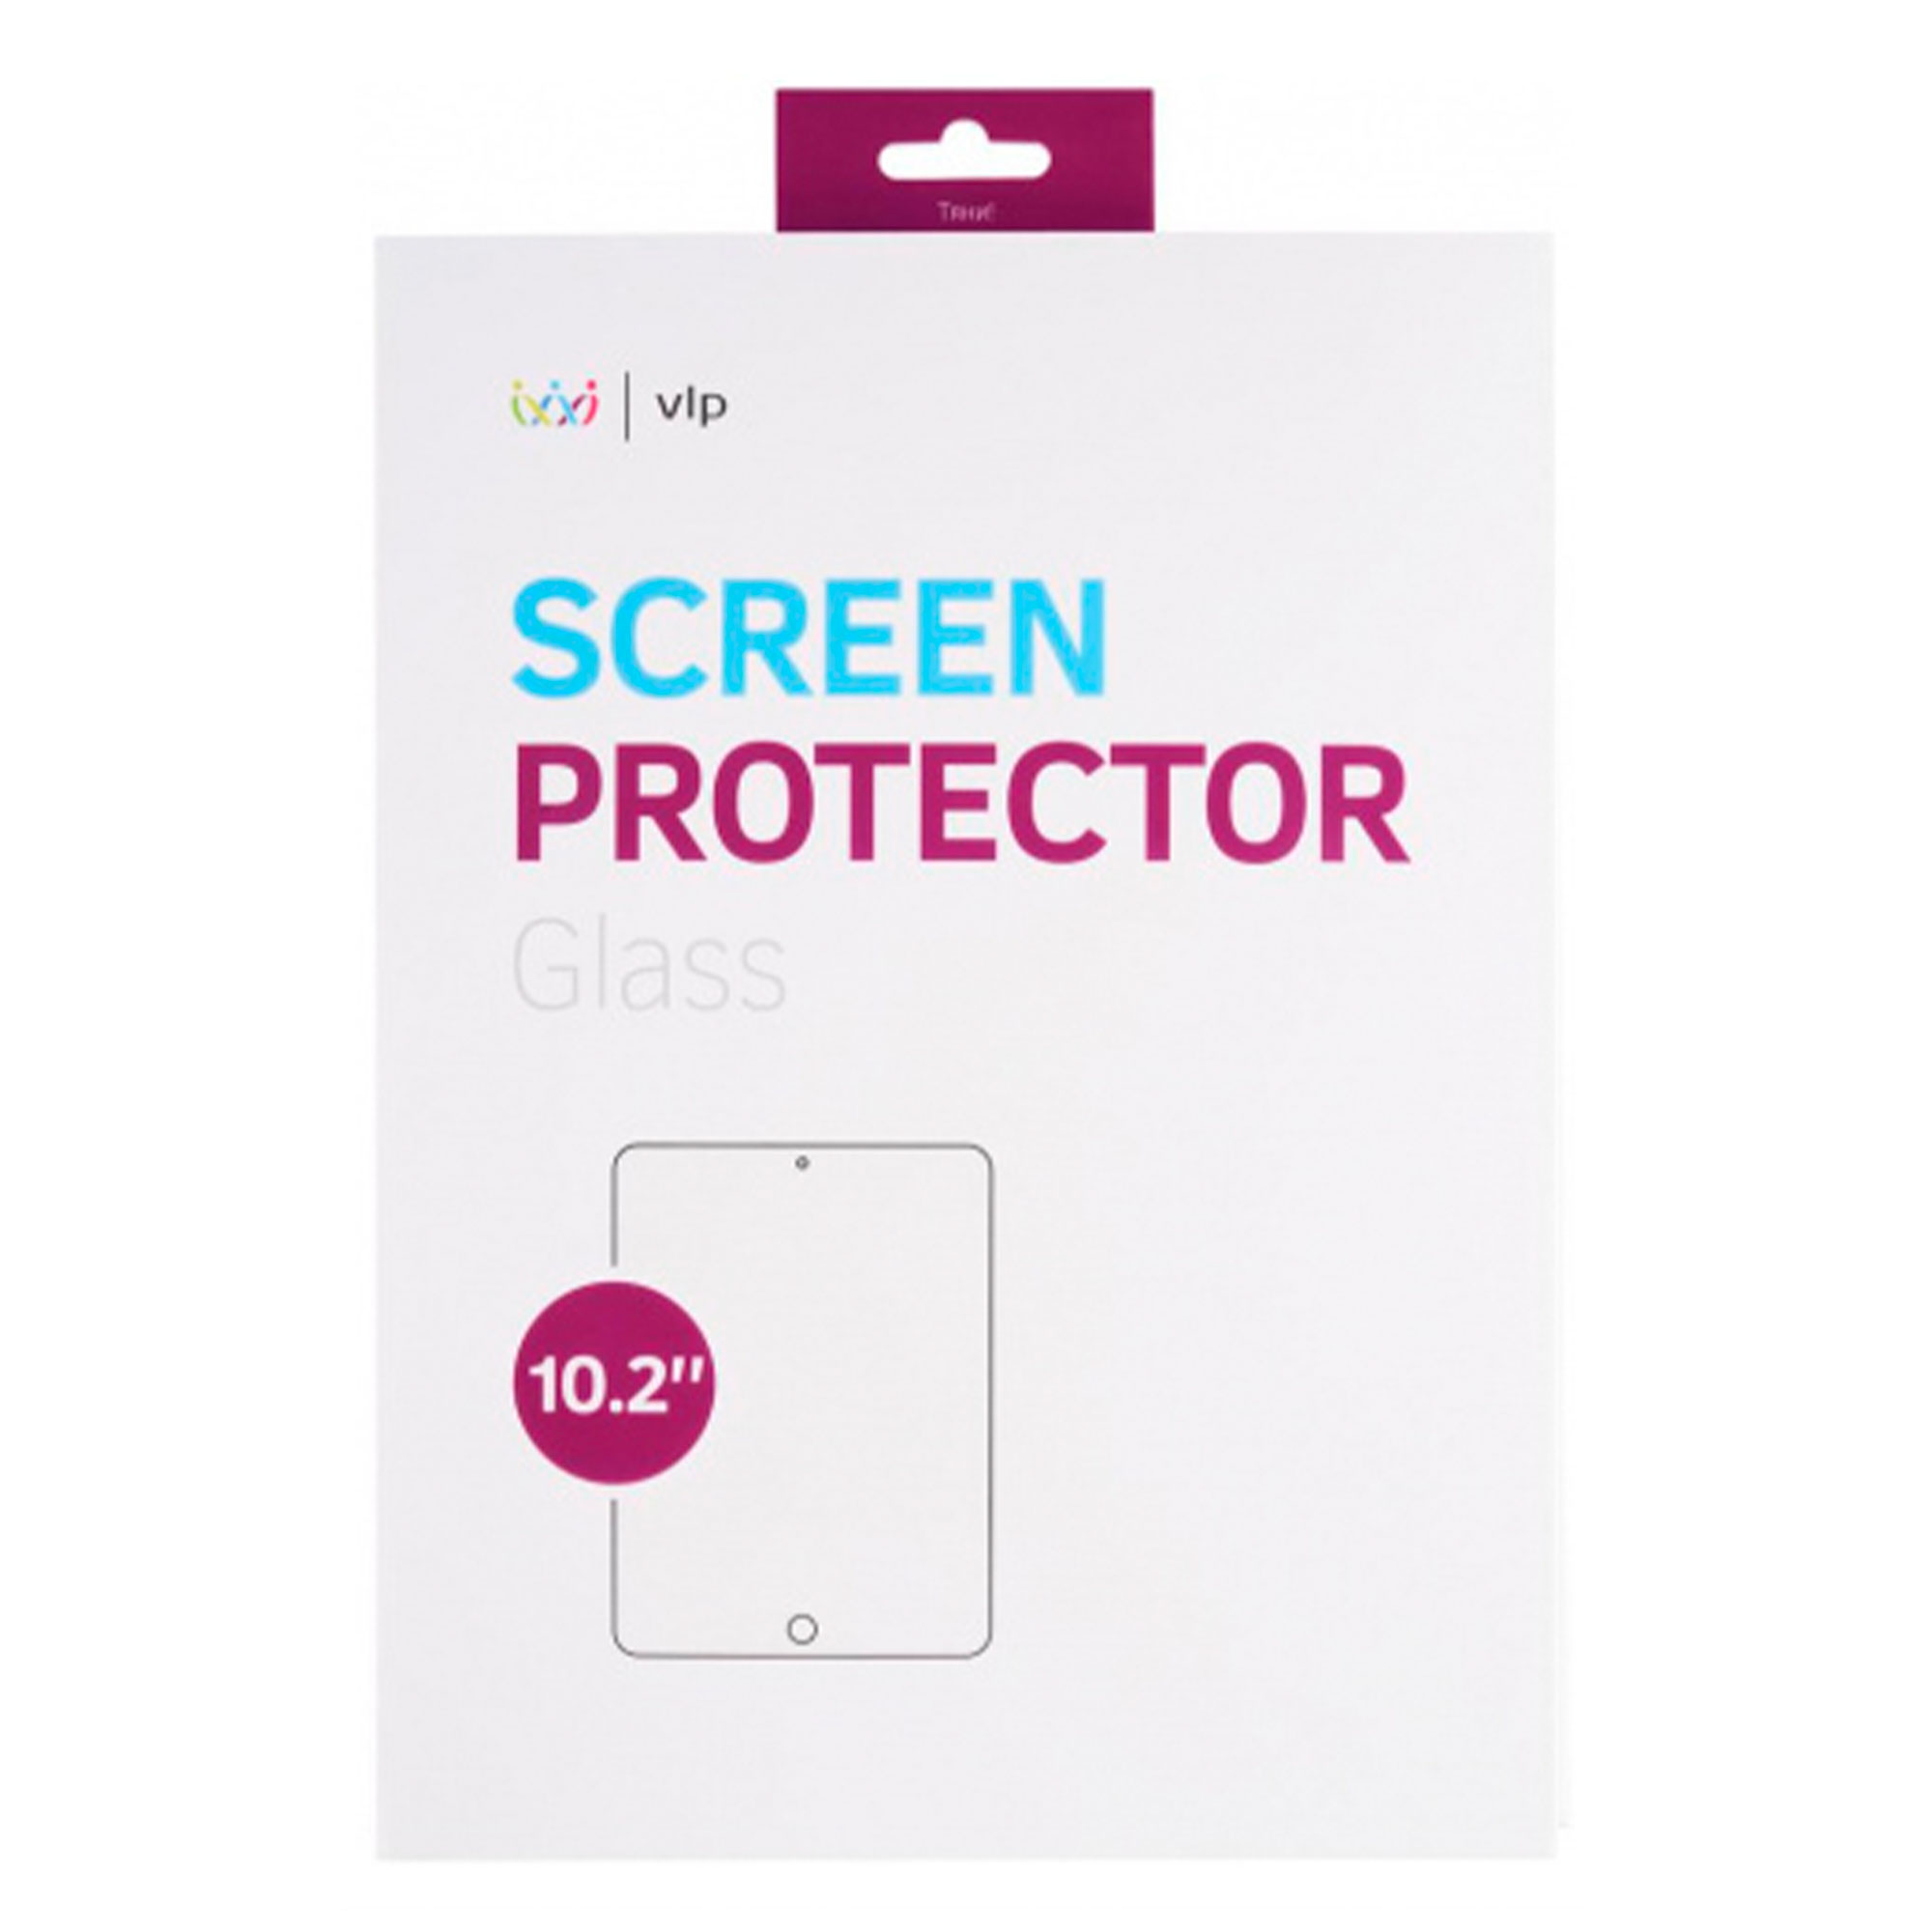 Фото — Защитное стекло для планшета vlp для iPad Pro 10.2", олеофобное